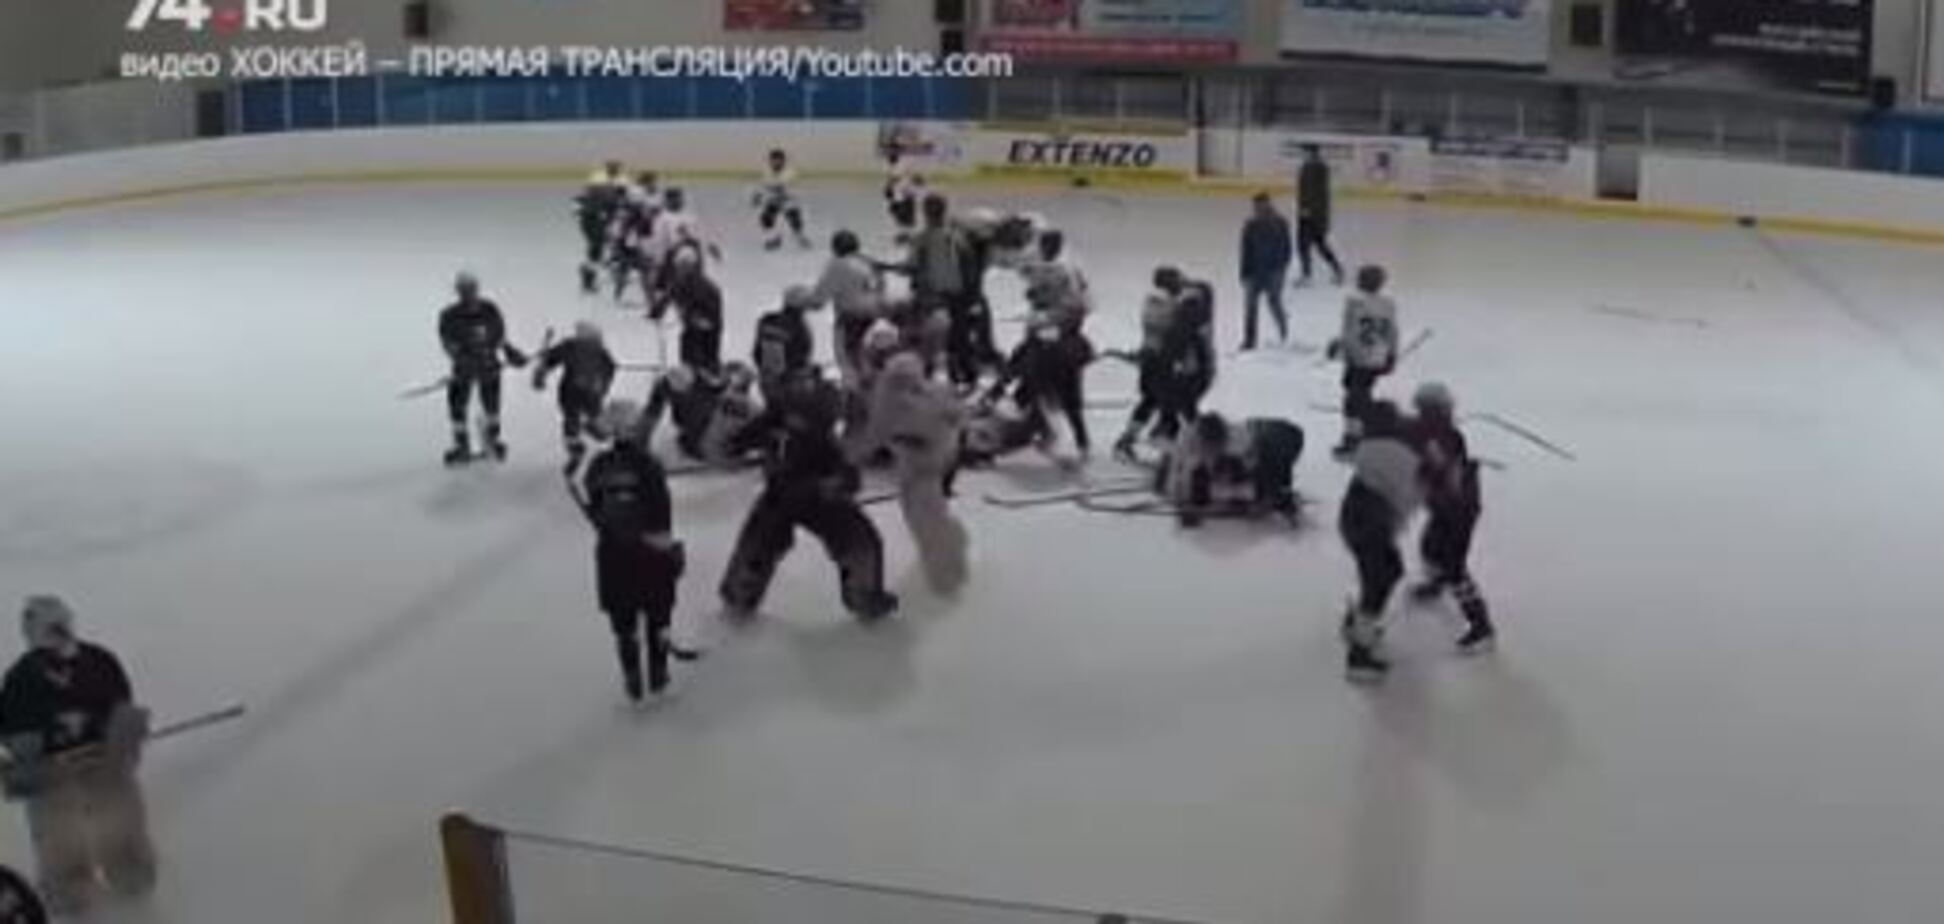 Российские хоккеисты устроили драку на юношеском турнире: видеофакт